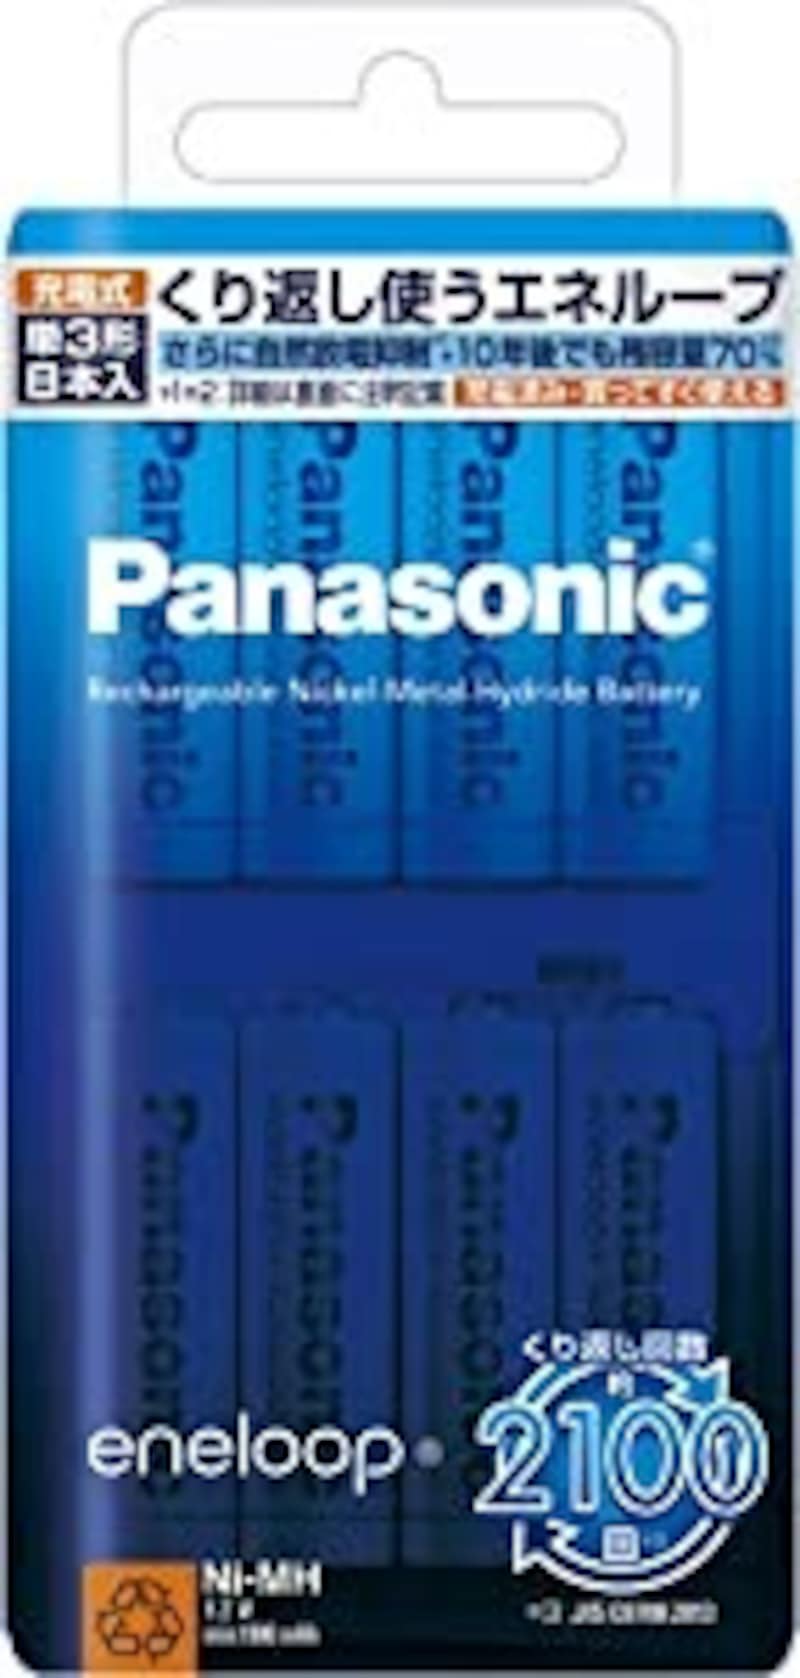 Panasonic（パナソニック）,eneloop 単3形 8本パック,BK-3MCC/8